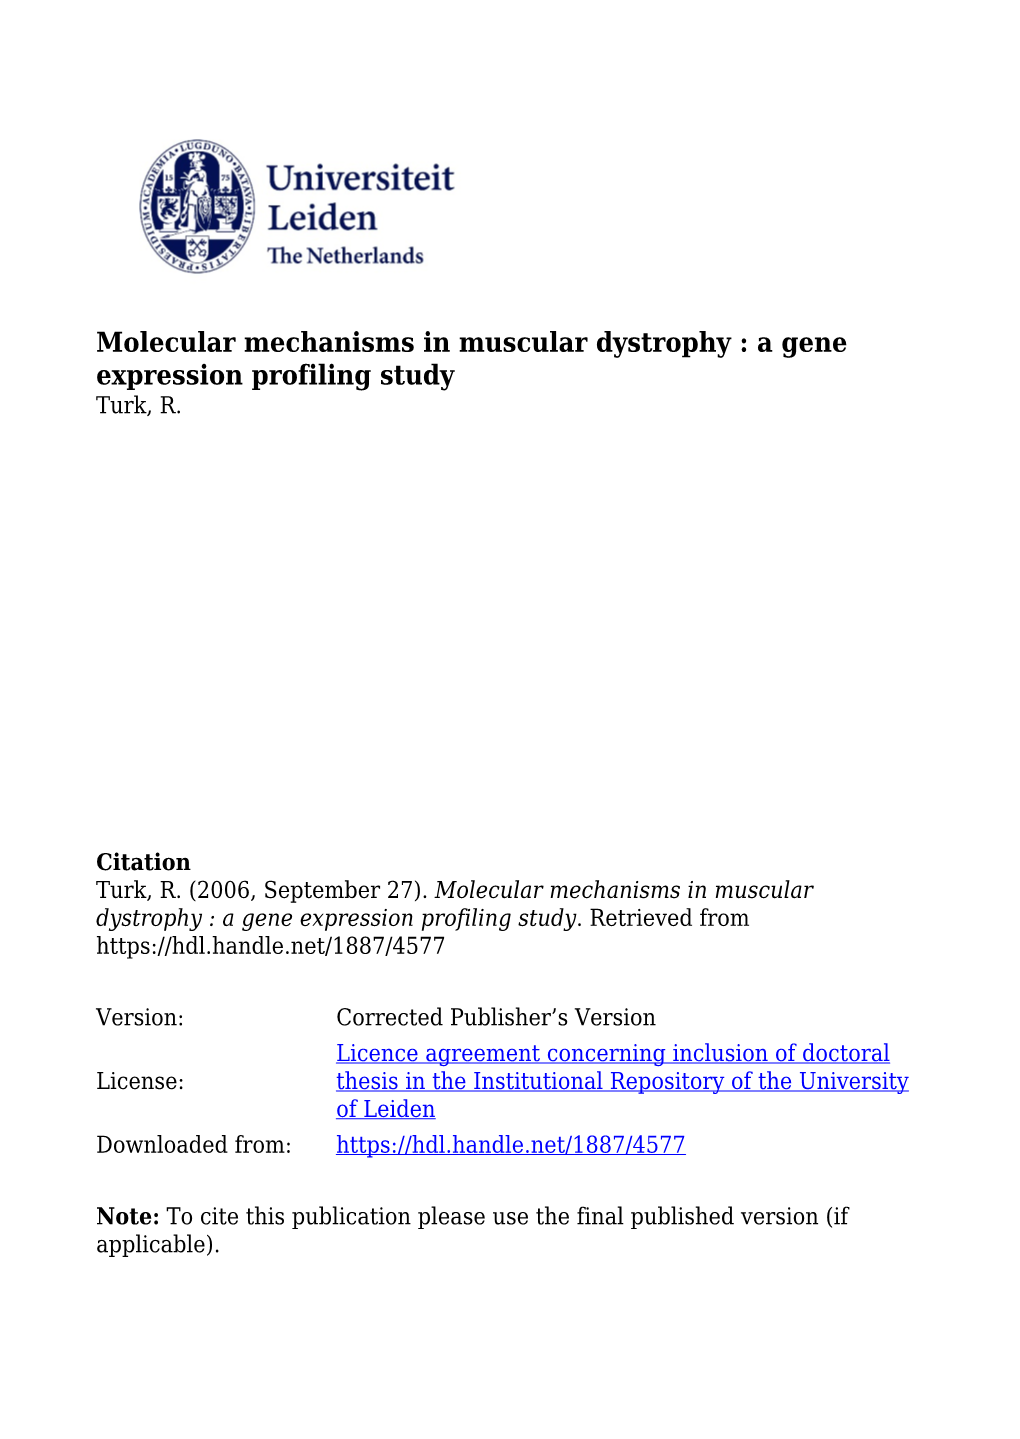 Molecular Mechanisms in Muscular Dystrophy : a Gene Expression Profiling Study Turk, R